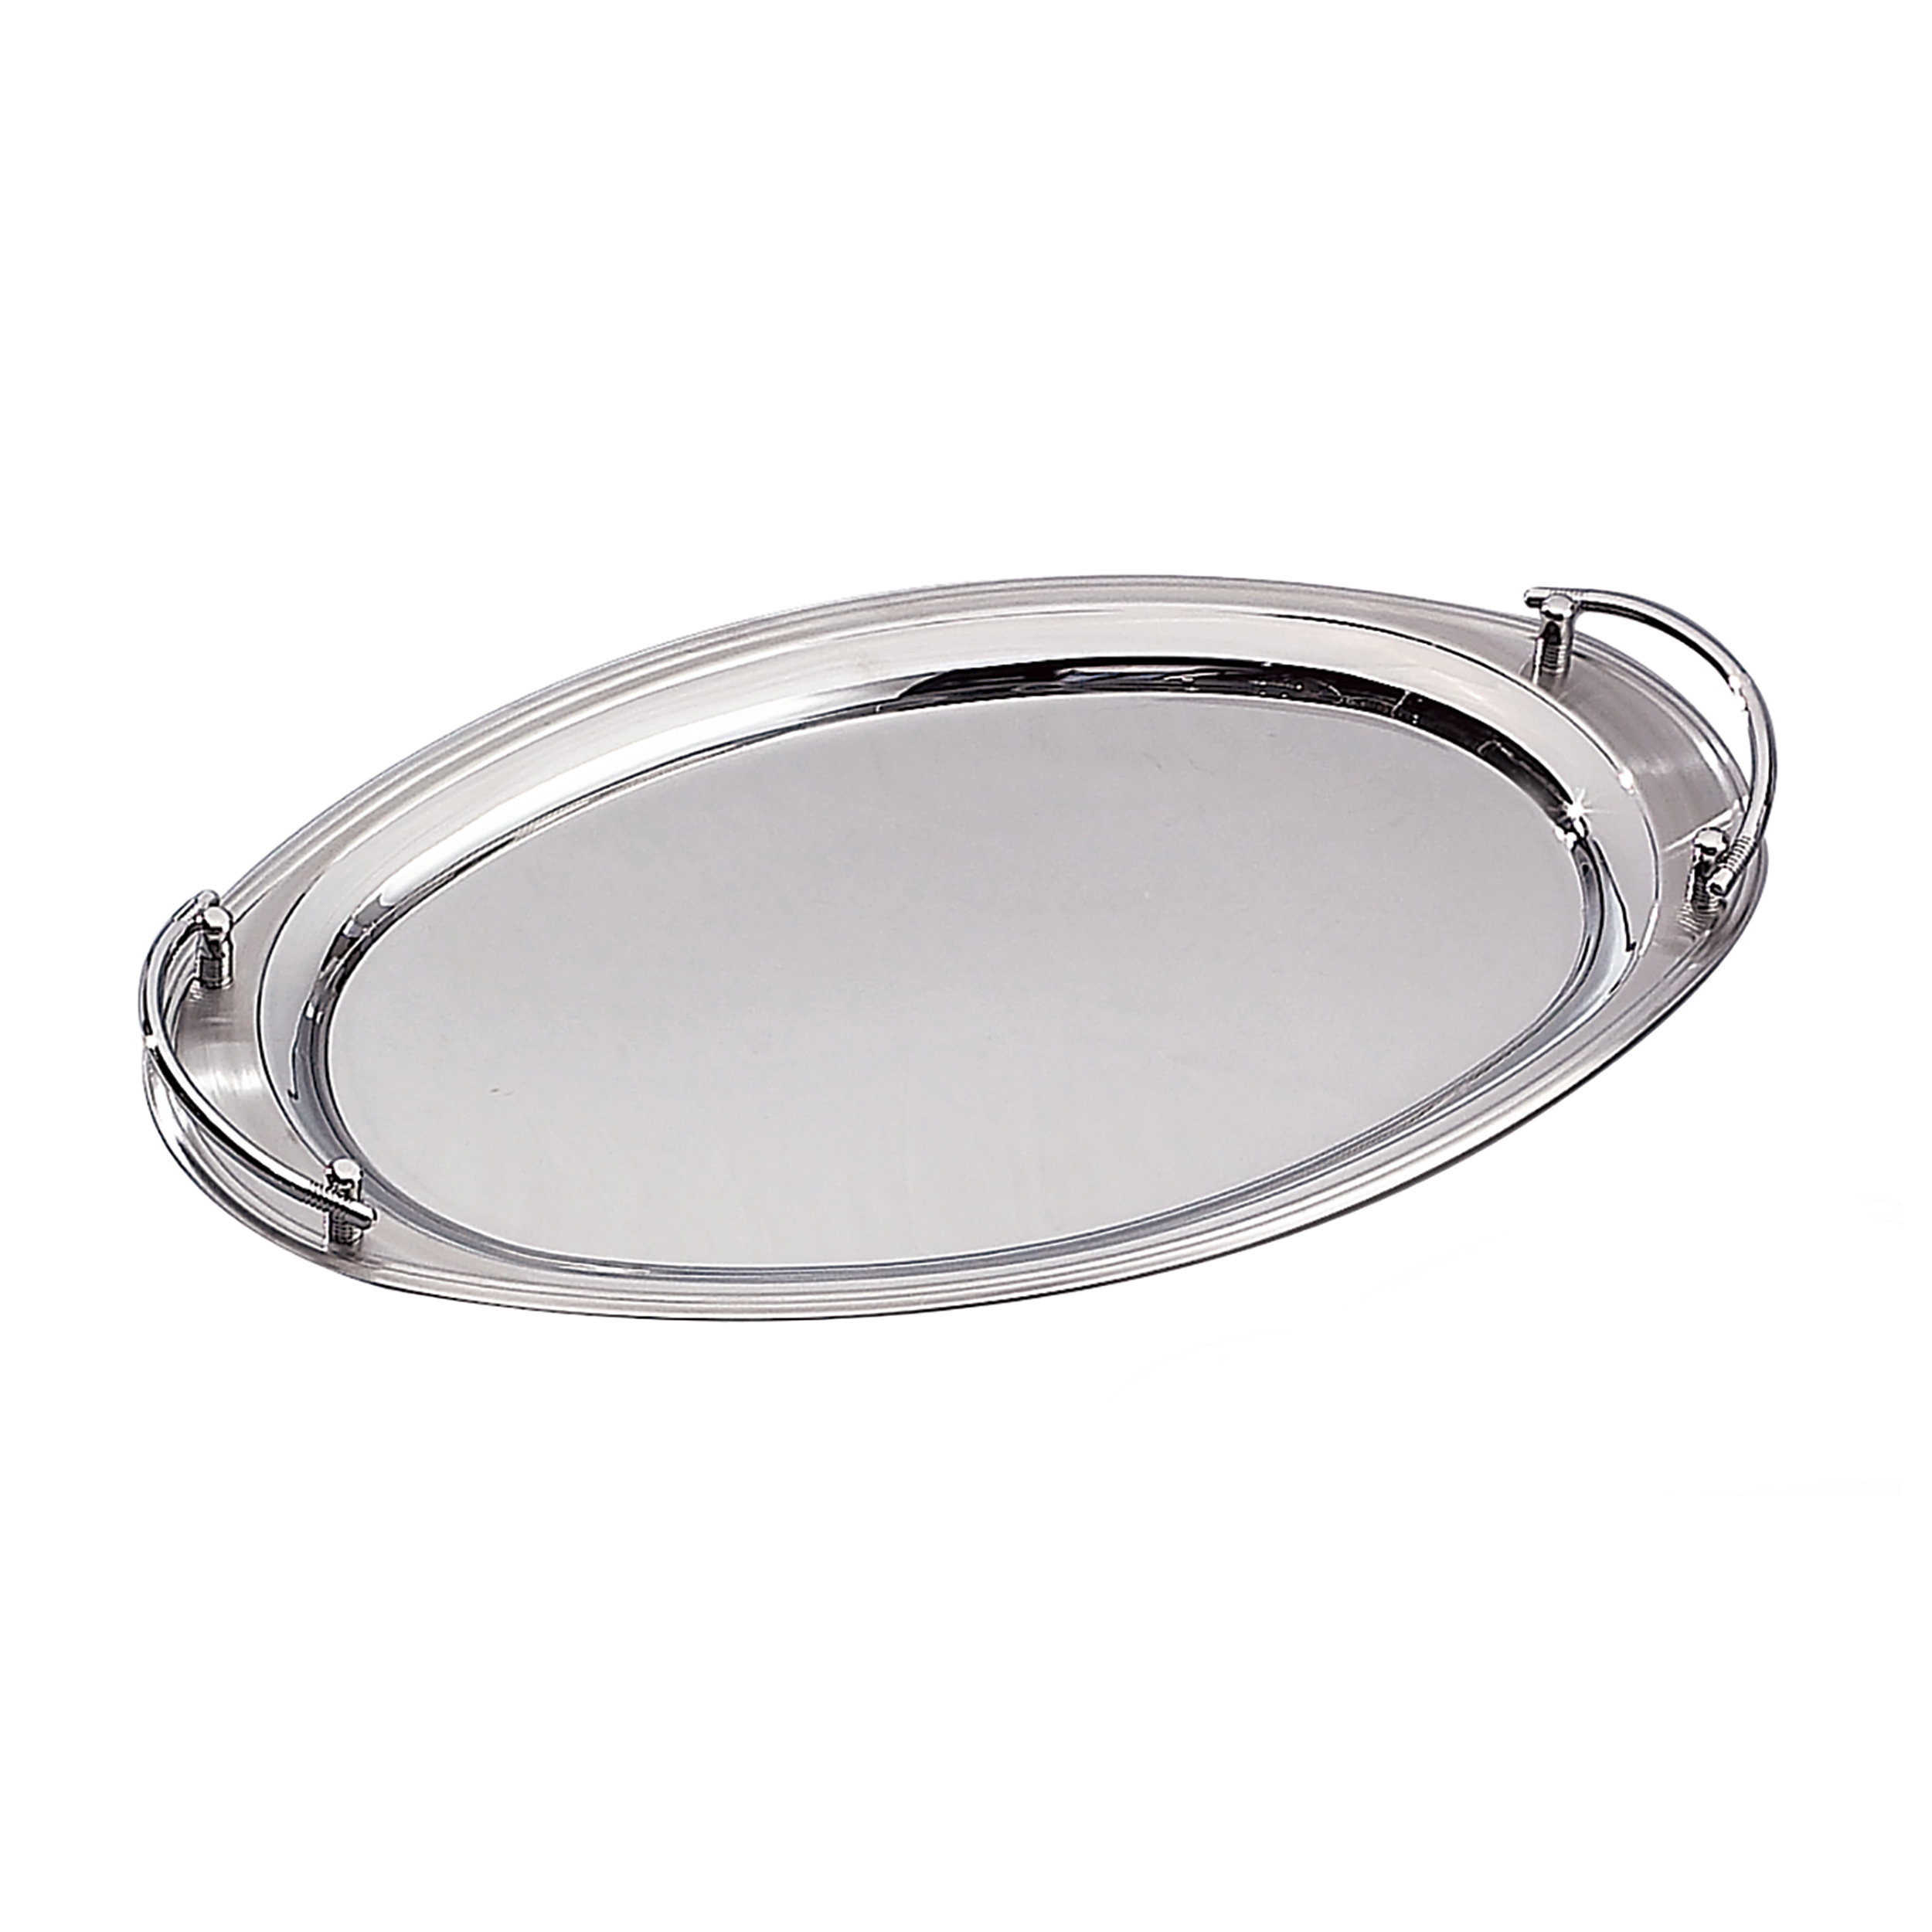 22" x 13" oval tray w/handles - Item # 5844